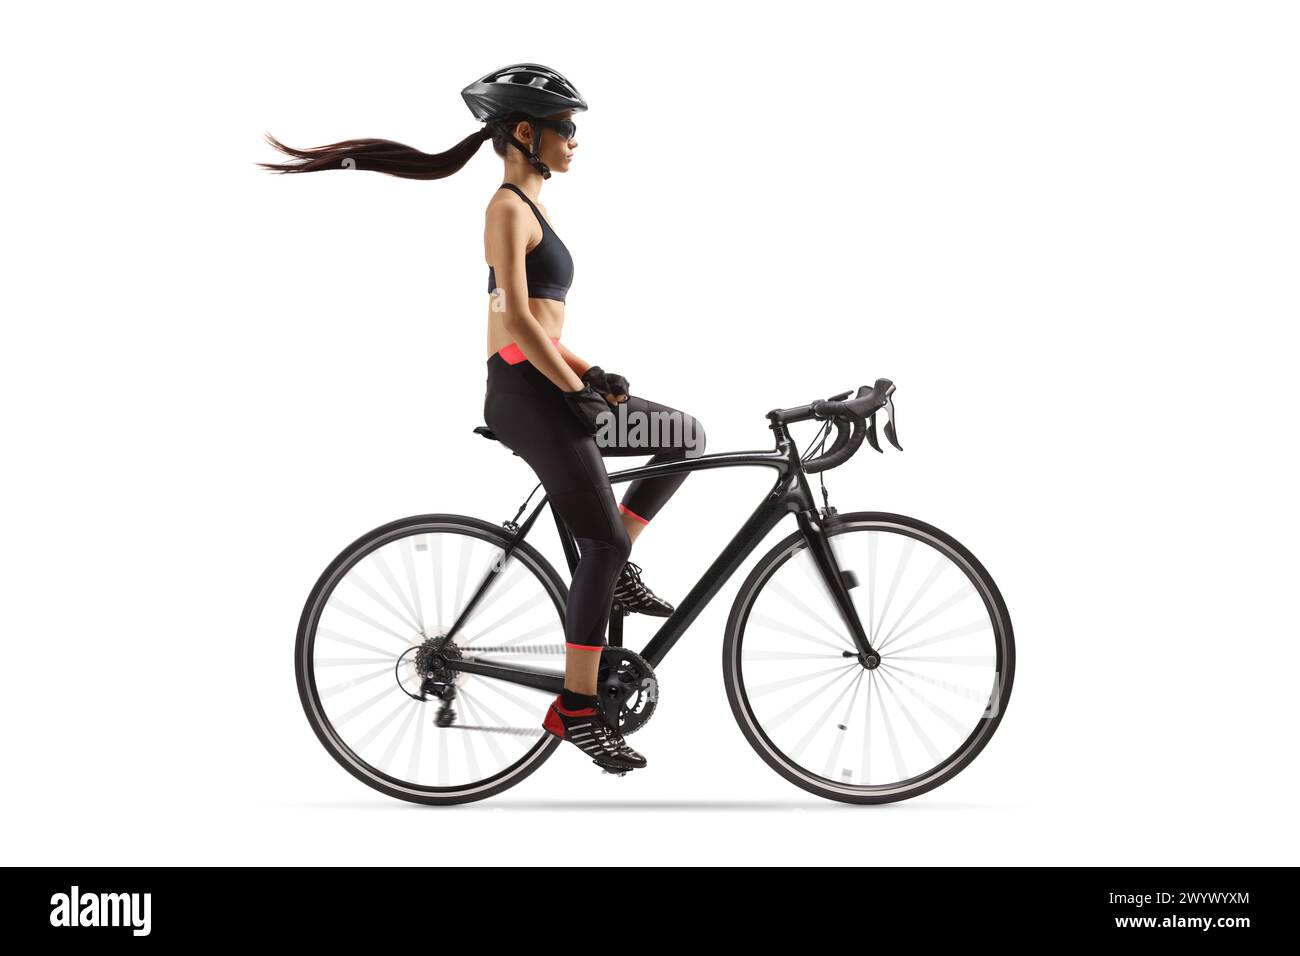 Plan de profil pleine longueur d'une cycliste avec un long cheveu chevauchant un vélo isolé sur fond blanc Banque D'Images